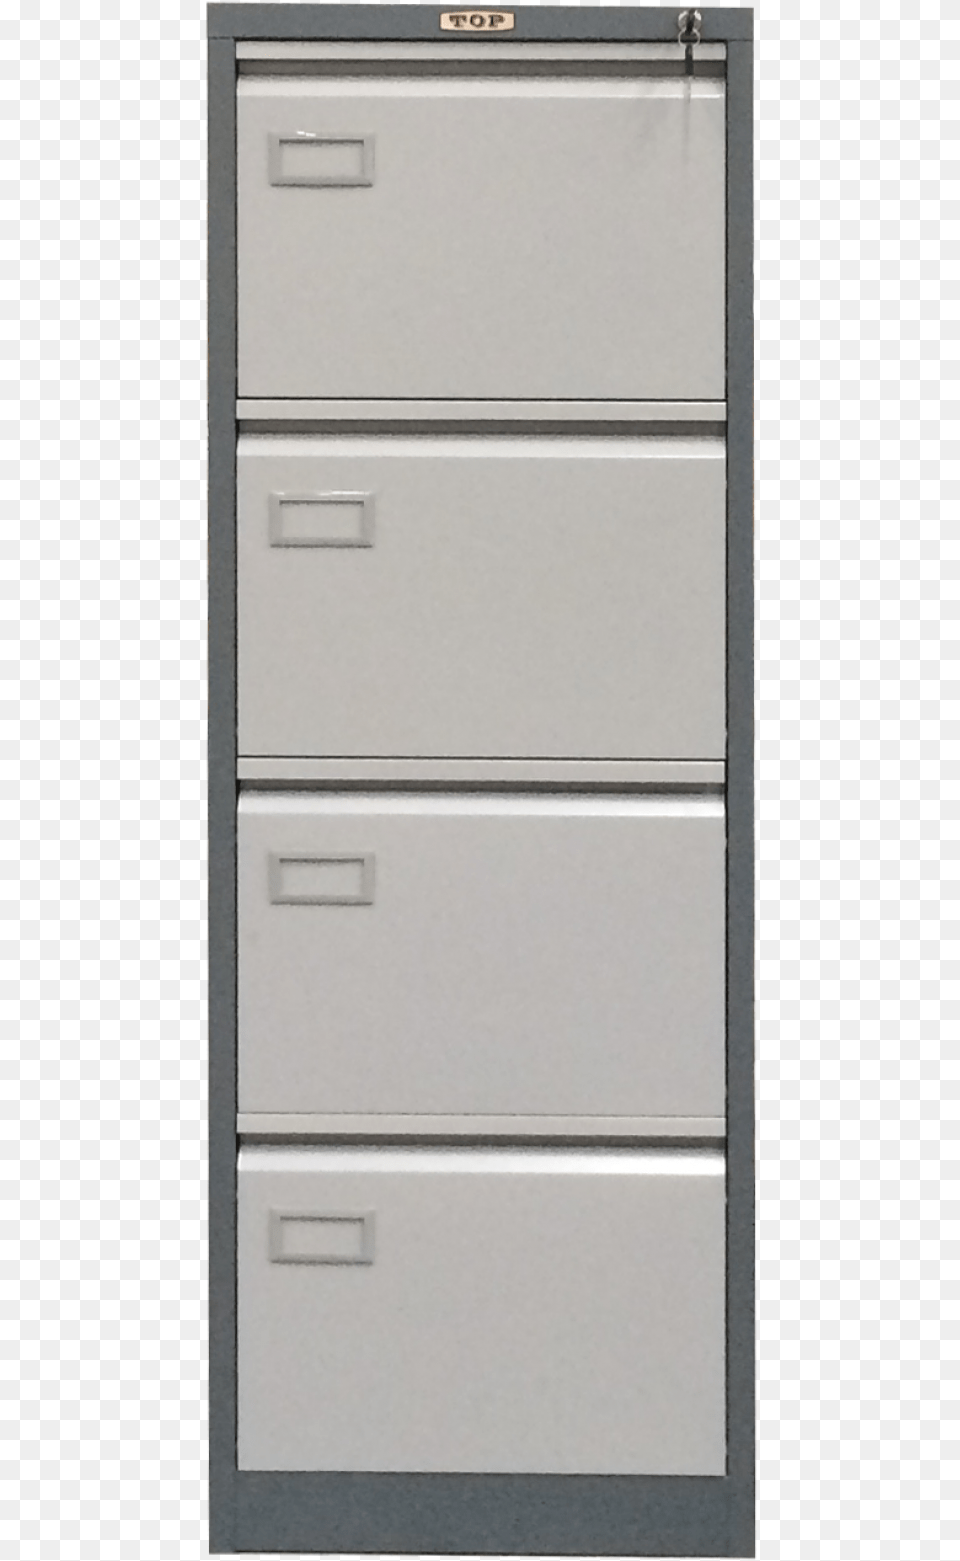 File Cabinet, Drawer, Furniture, Filing Cabinet Png Image